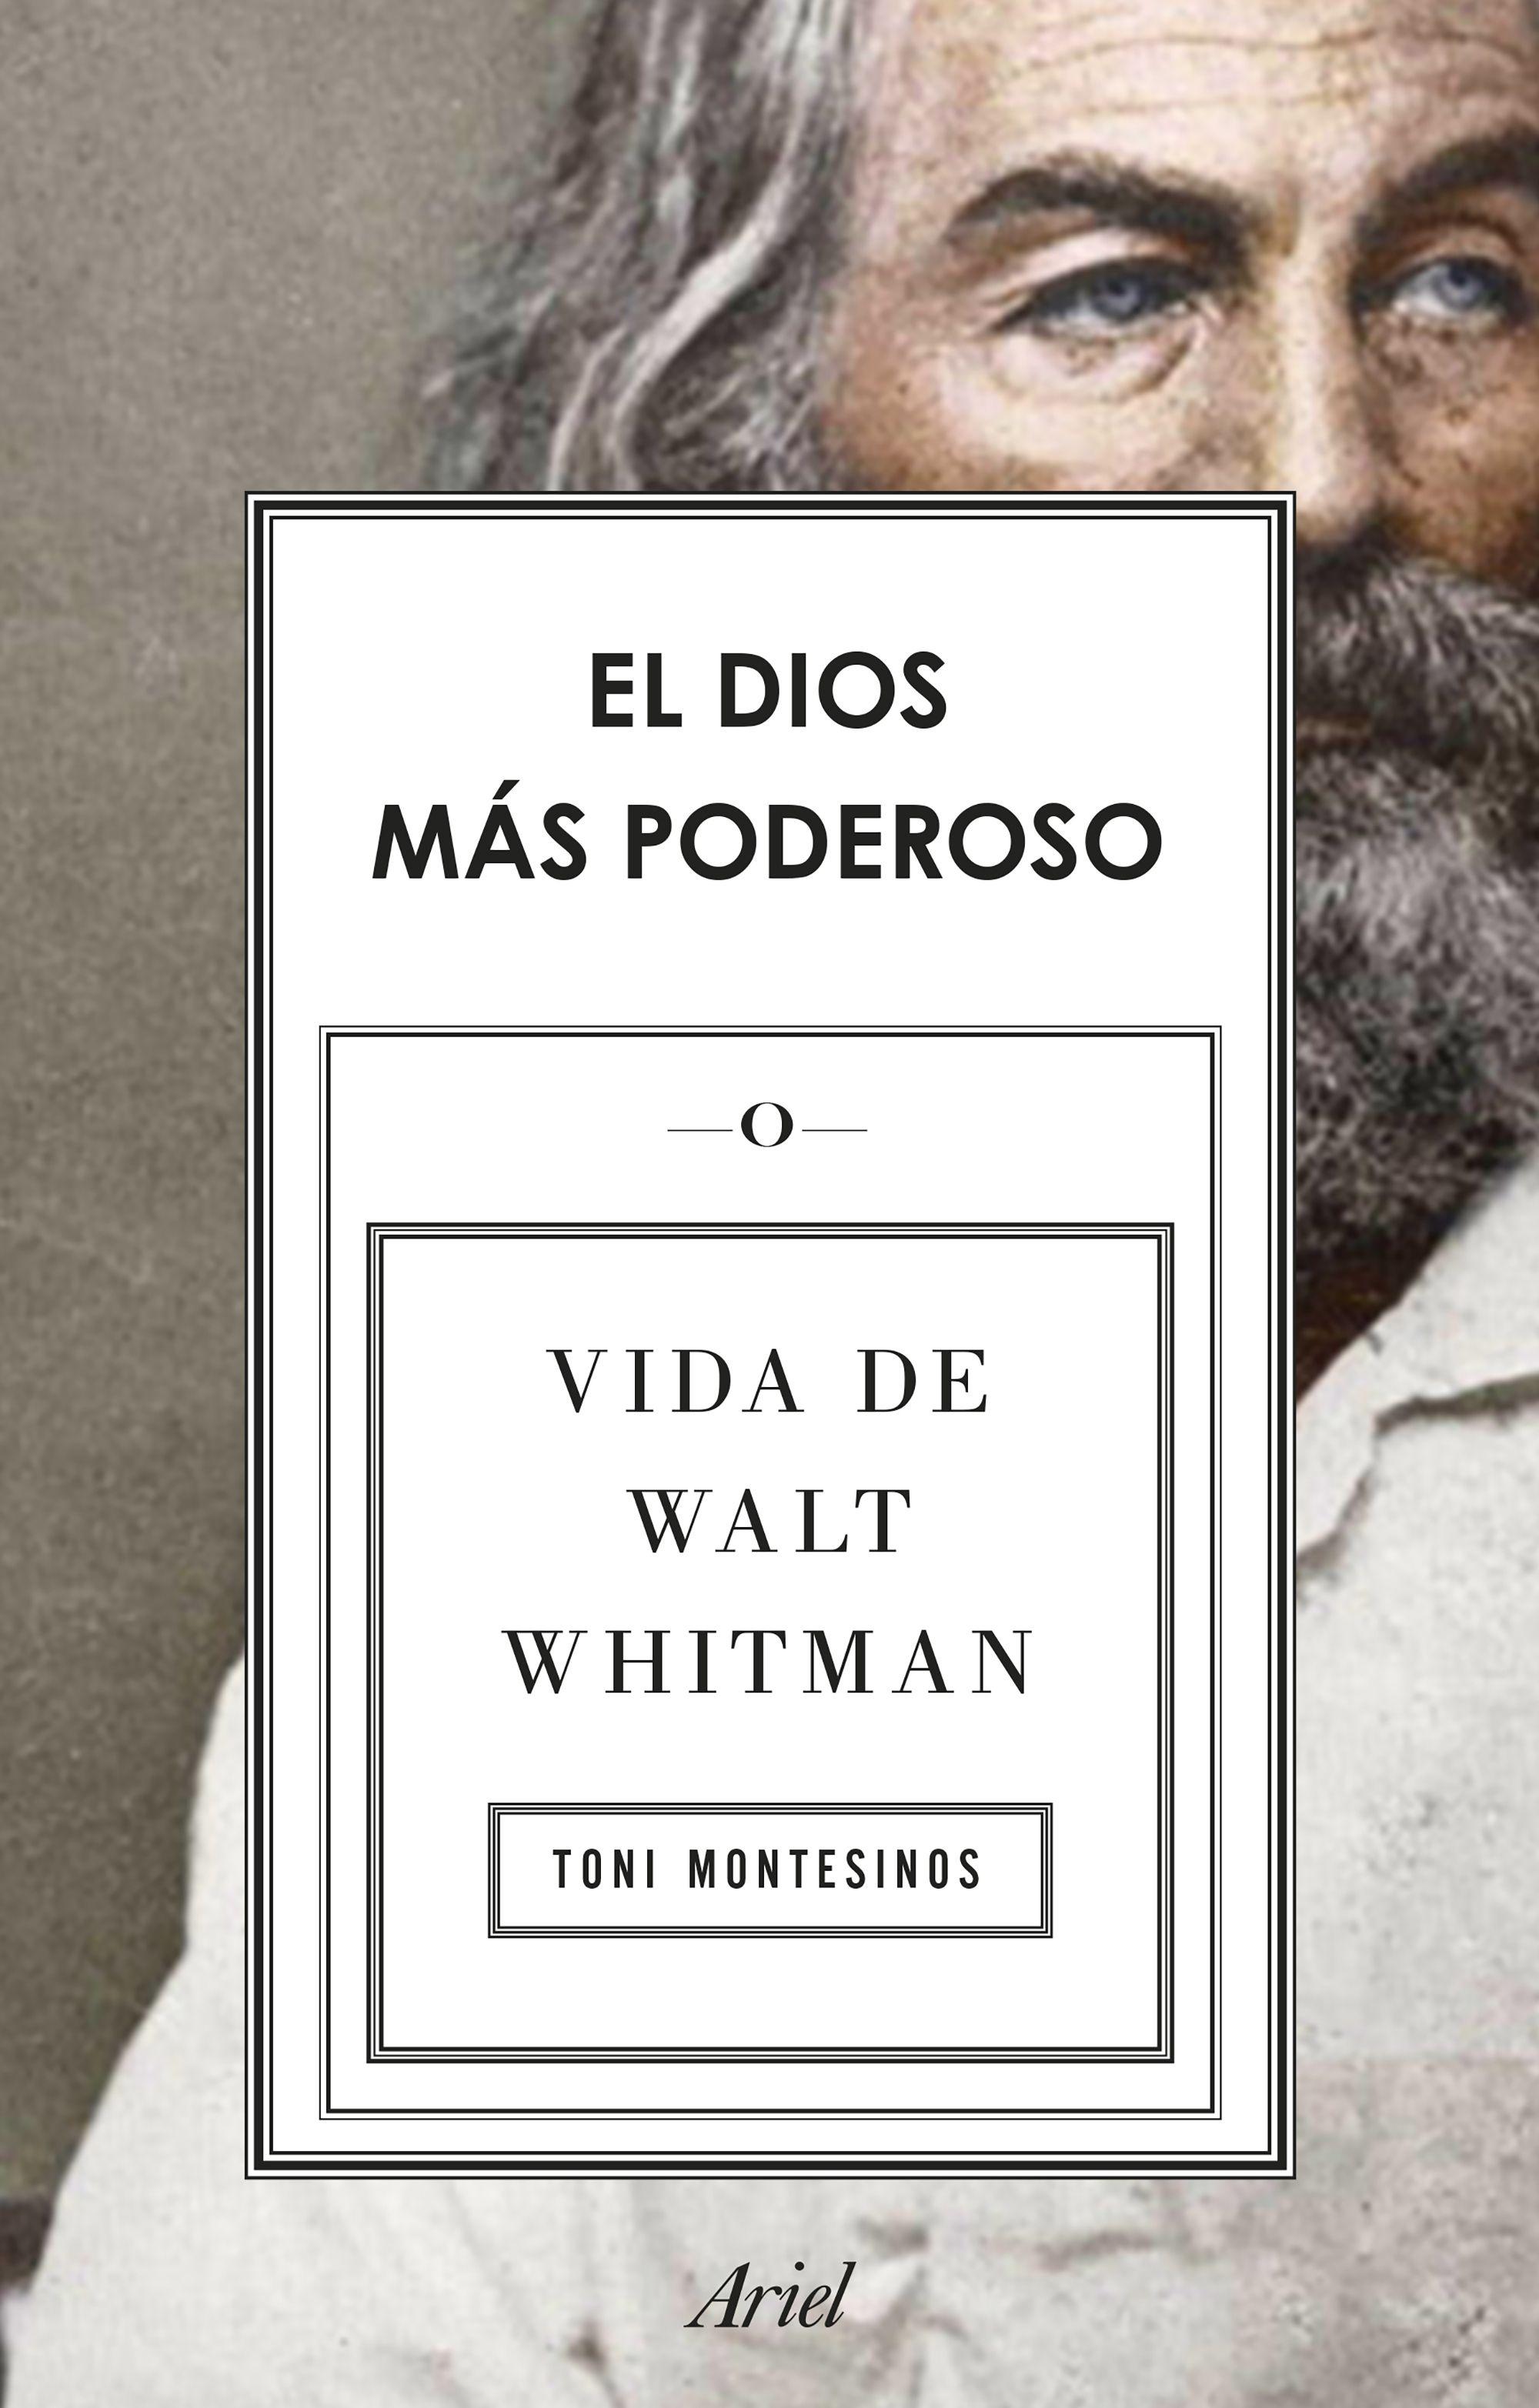 El Dios Más Poderoso "Vida de Walt Whitman"